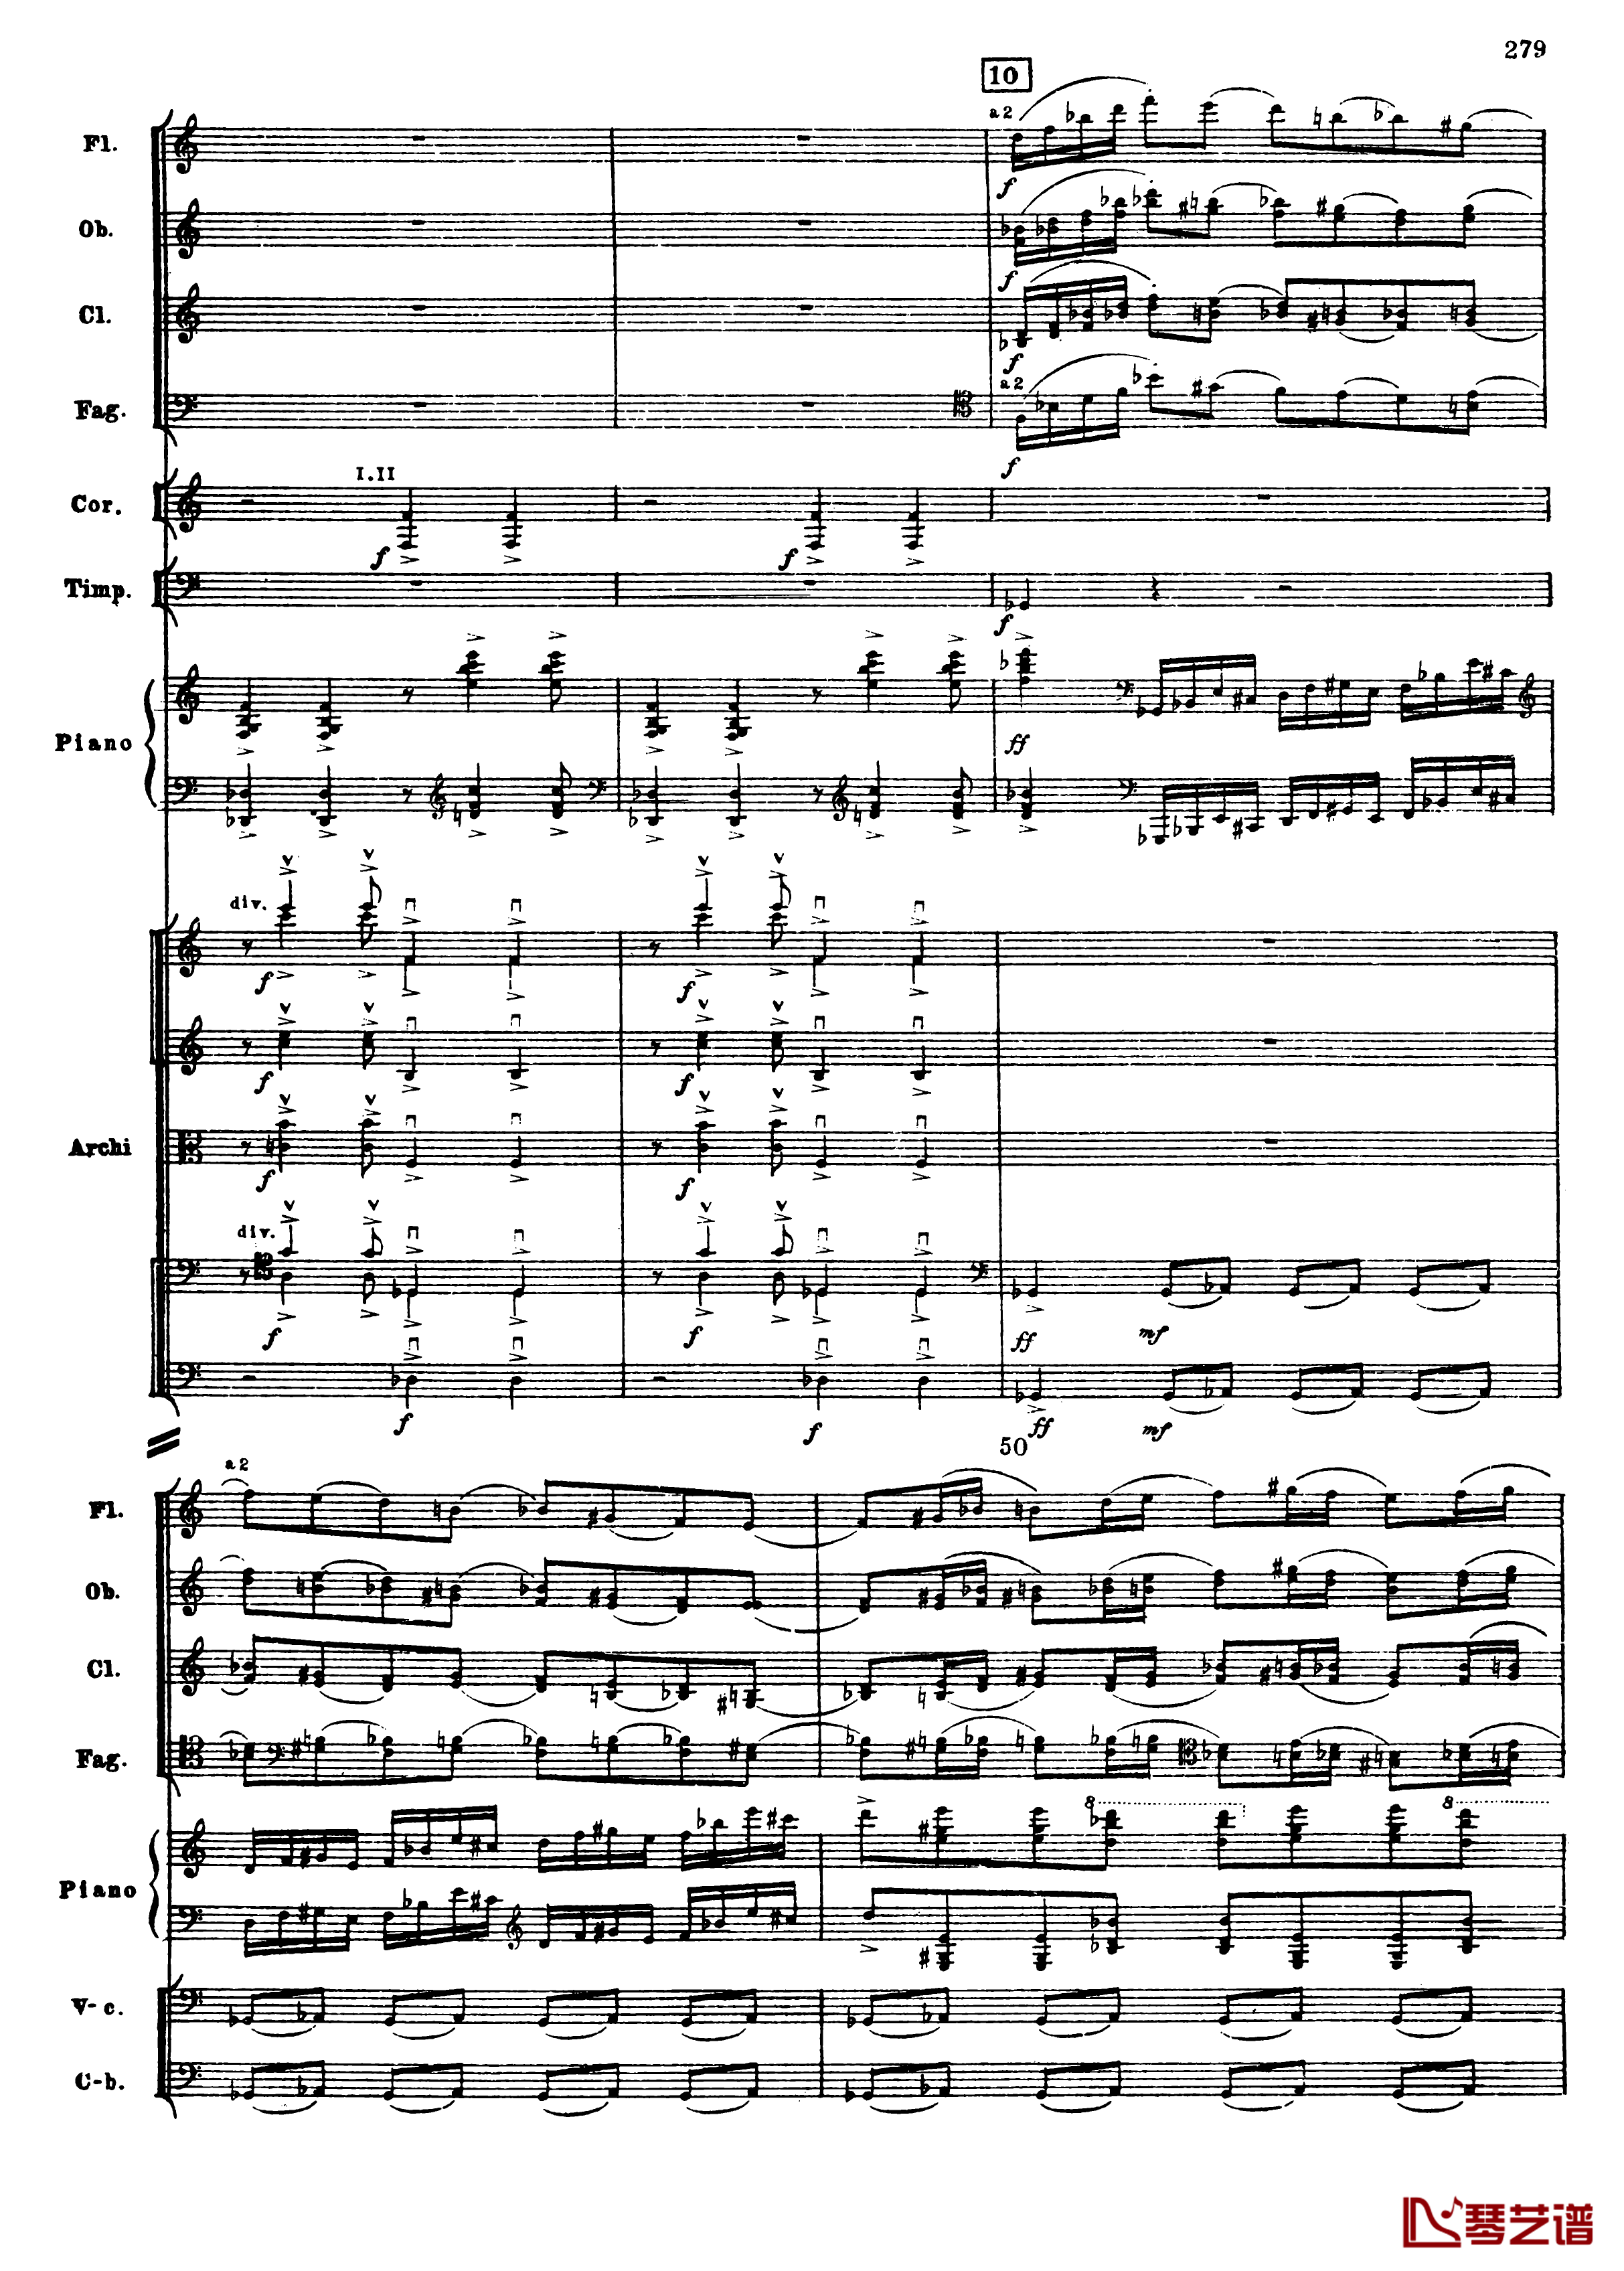 普罗科菲耶夫第三钢琴协奏曲钢琴谱-总谱-普罗科非耶夫11